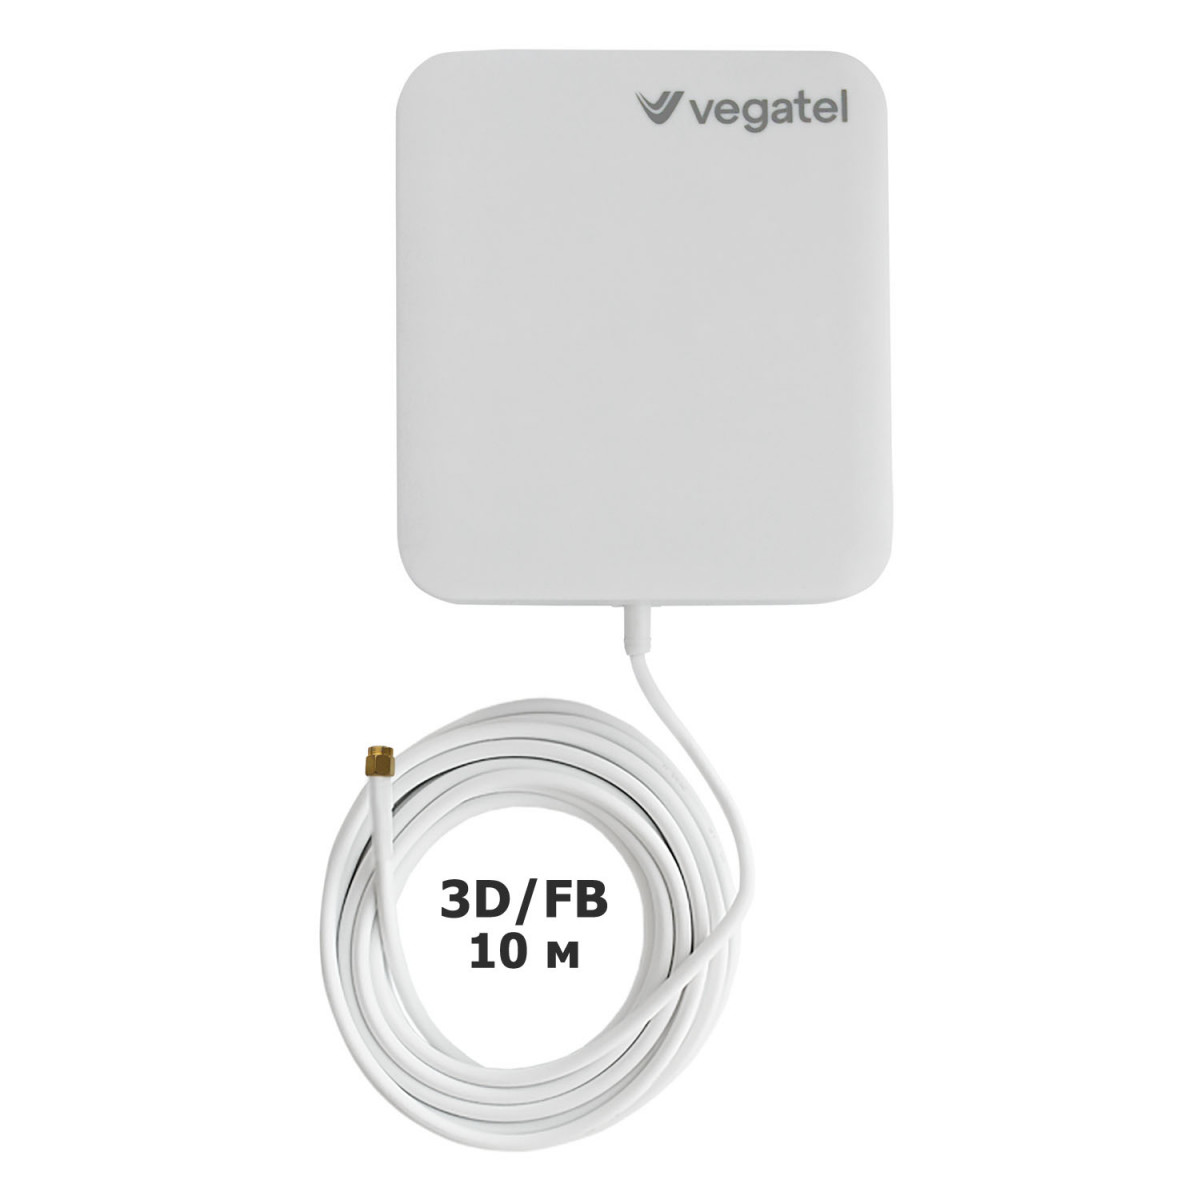 Детальное изображение товара "Комплект усиления сотовой связи Vegatel PL-900/1800" из каталога оборудования Антенна76